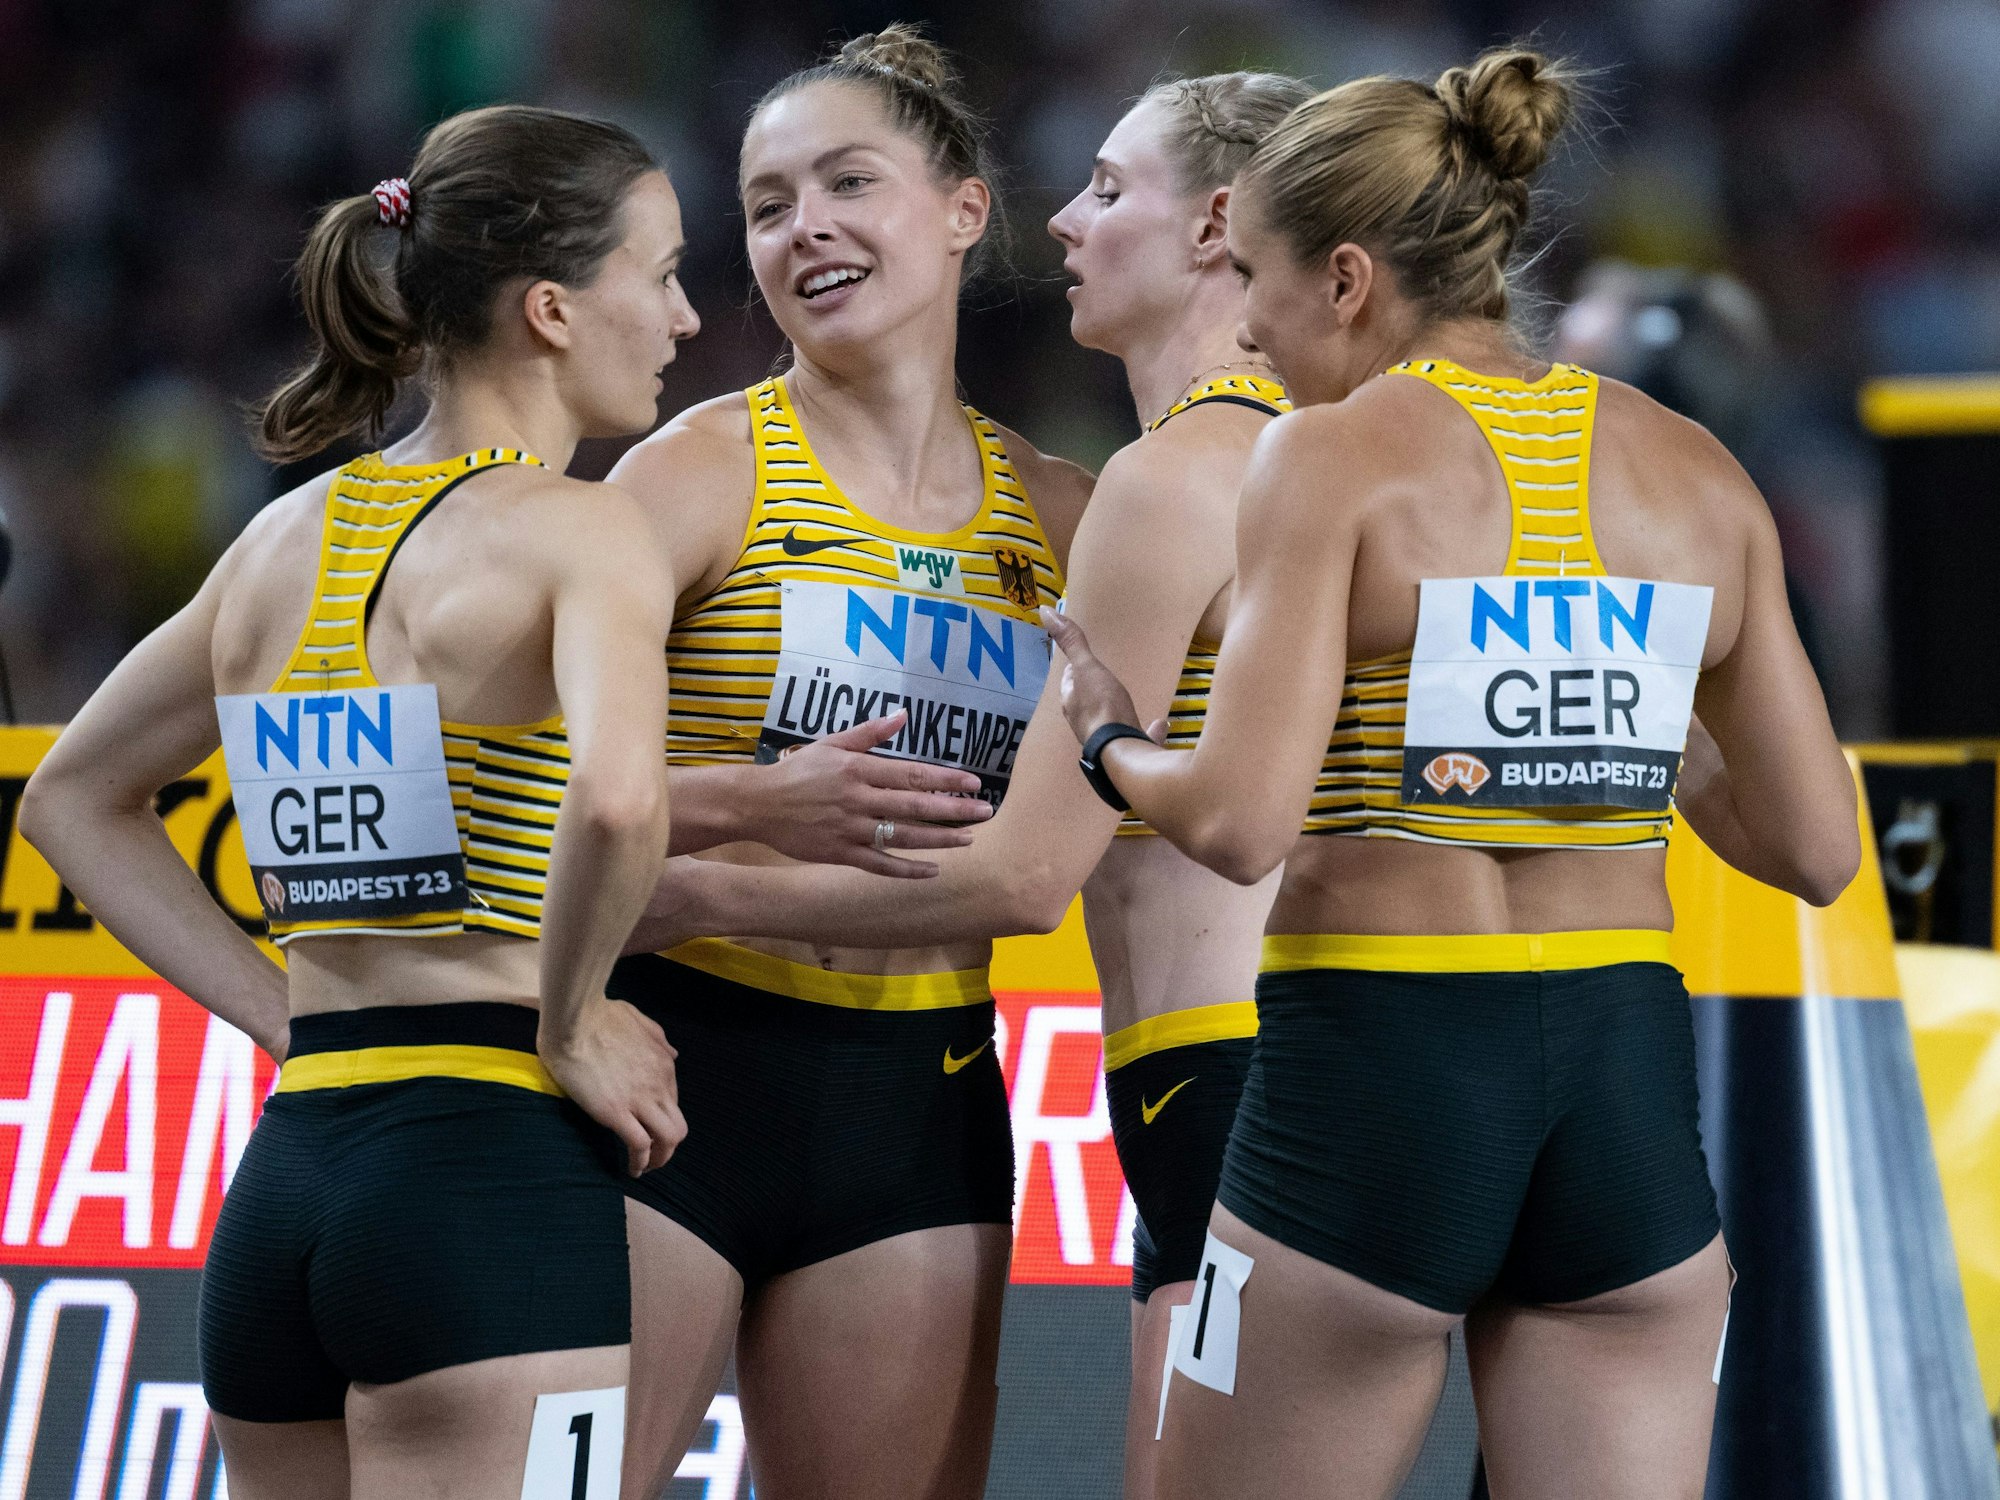 Louise Wieland, Gina Lückenkemper, Sina Mayer und Rebekka Haase nach dem Zieleinlauf.